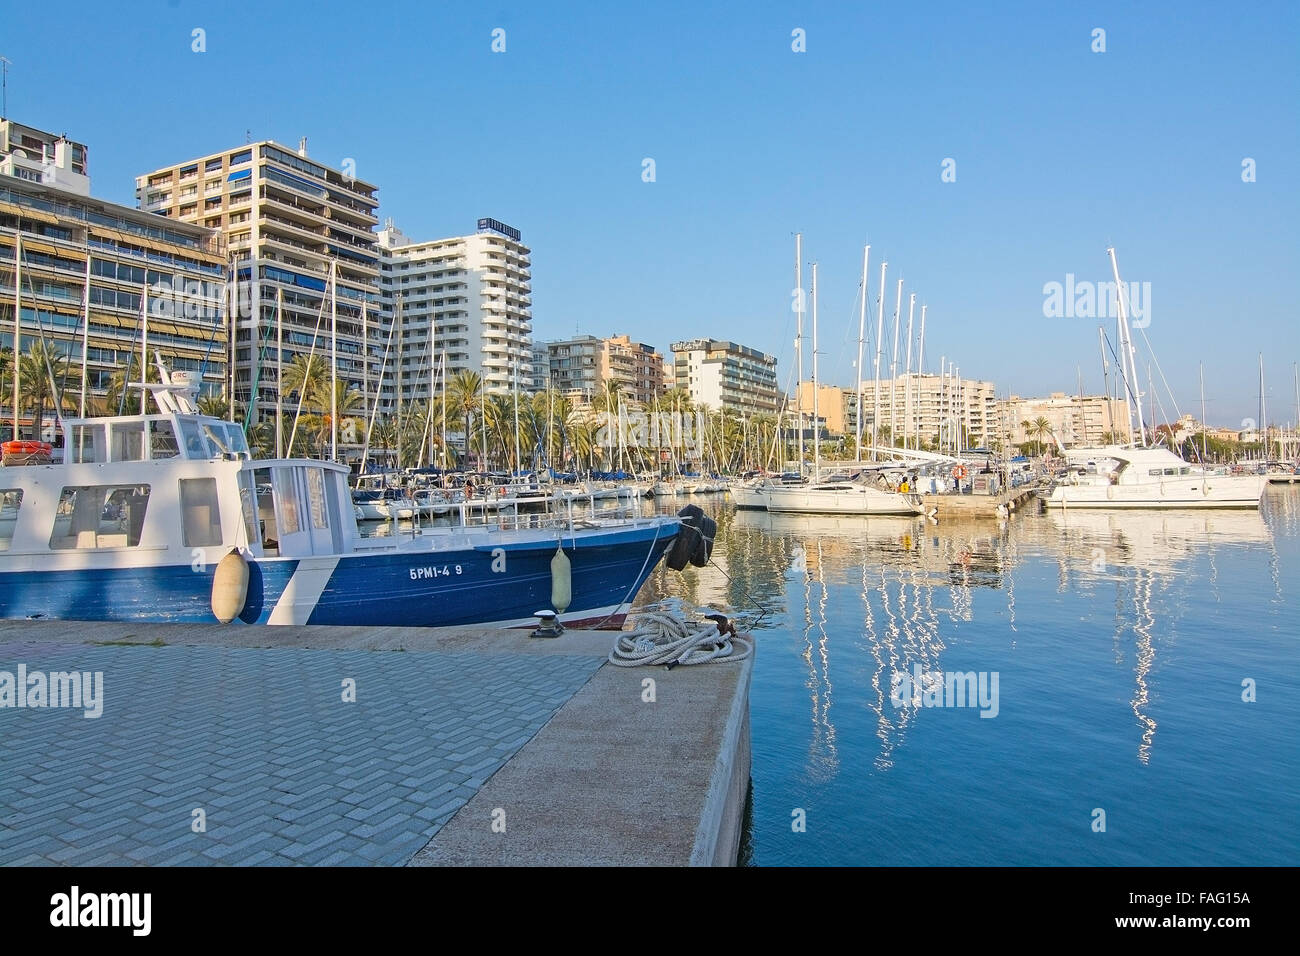 Bateaux dans le port de plaisance de Palma et l'hôtel Costa Azul sur une journée ensoleillée le 20 décembre 2015 à Palma de Majorque, Espagne Banque D'Images